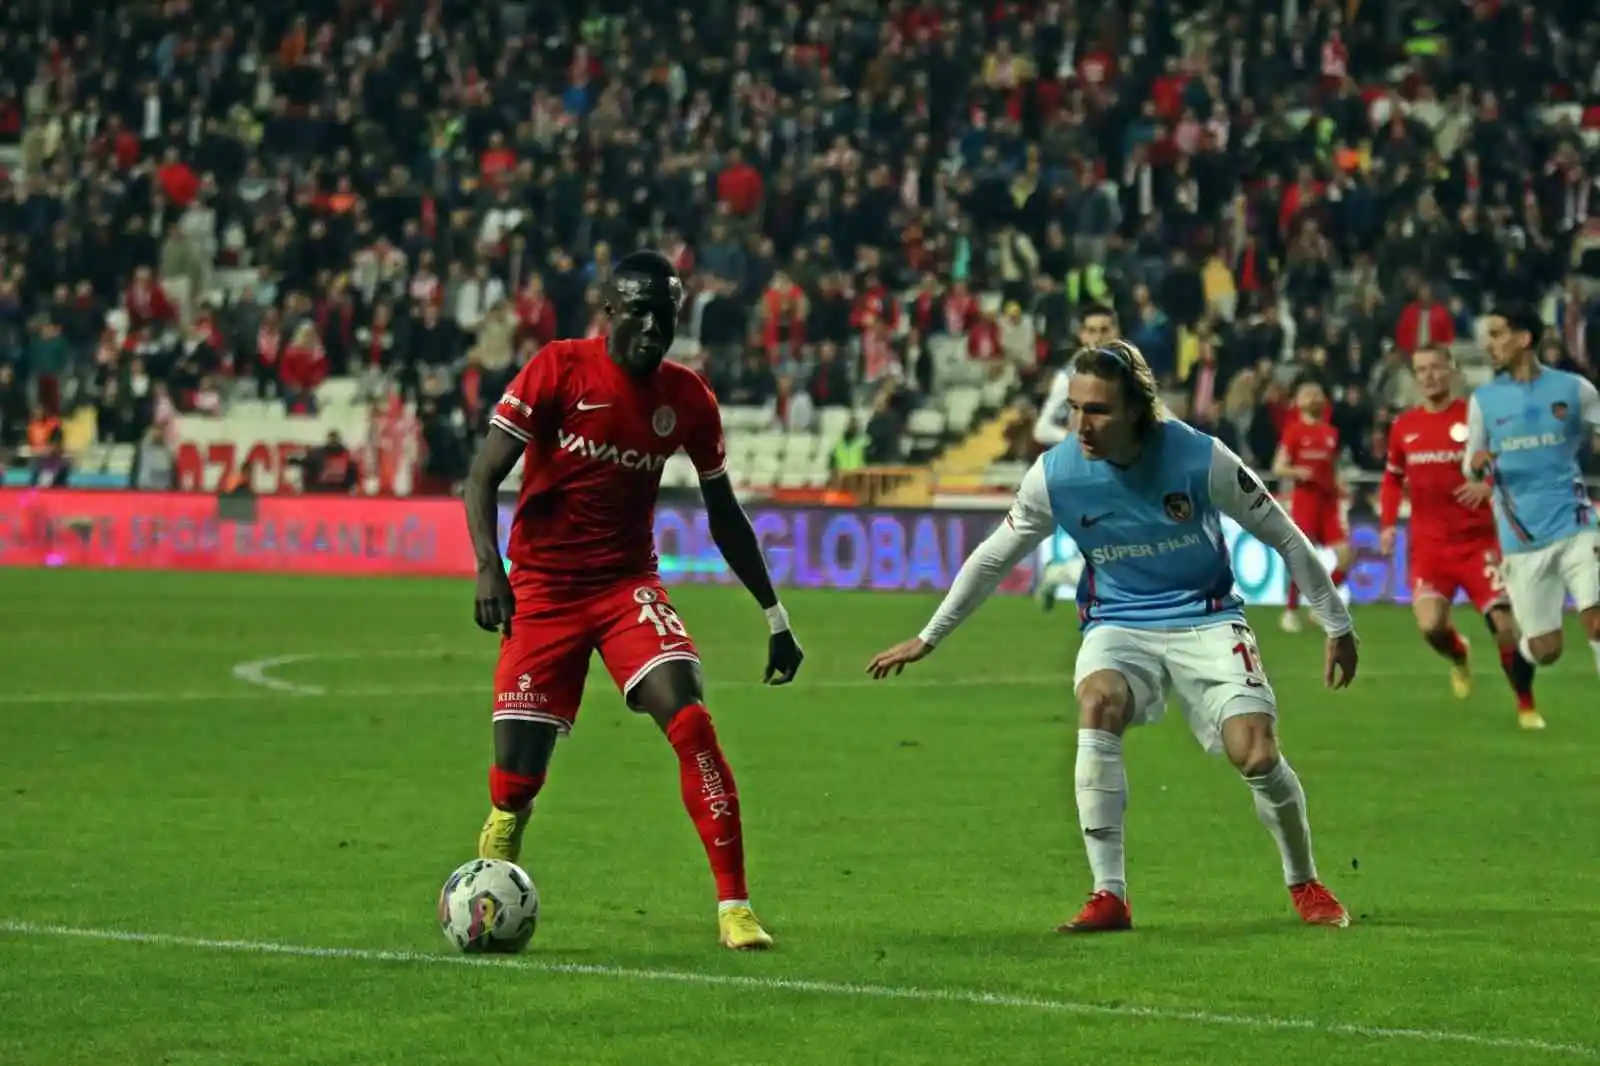 Spor Toto Süper Lig: FTA Antalyaspor: 1 - Gaziantep FK: 0 (İlk yarı)
